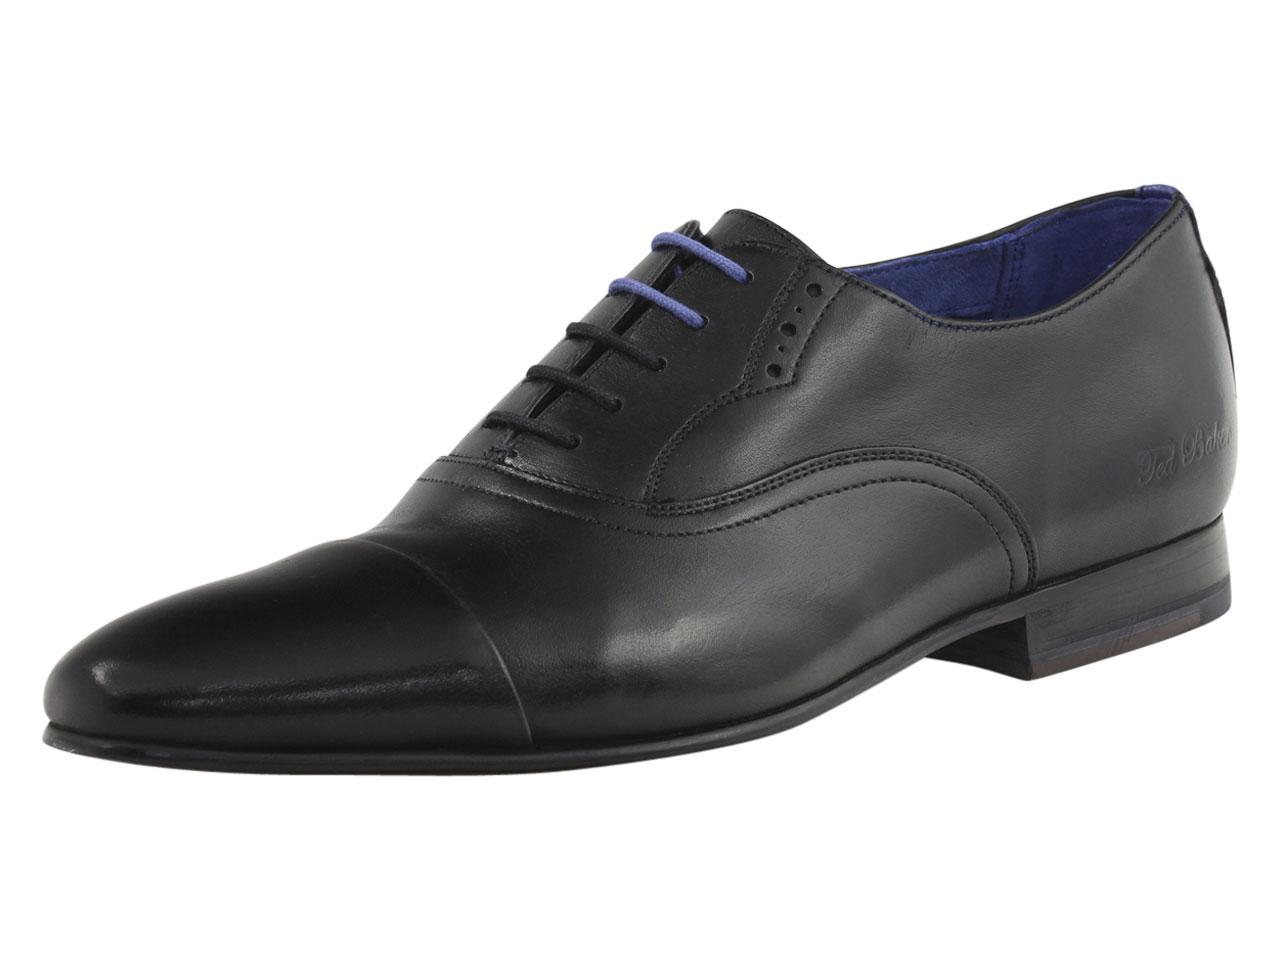 Ted Baker Men's Murain Fashion Oxfords Shoes - Black - 8 D(M) US